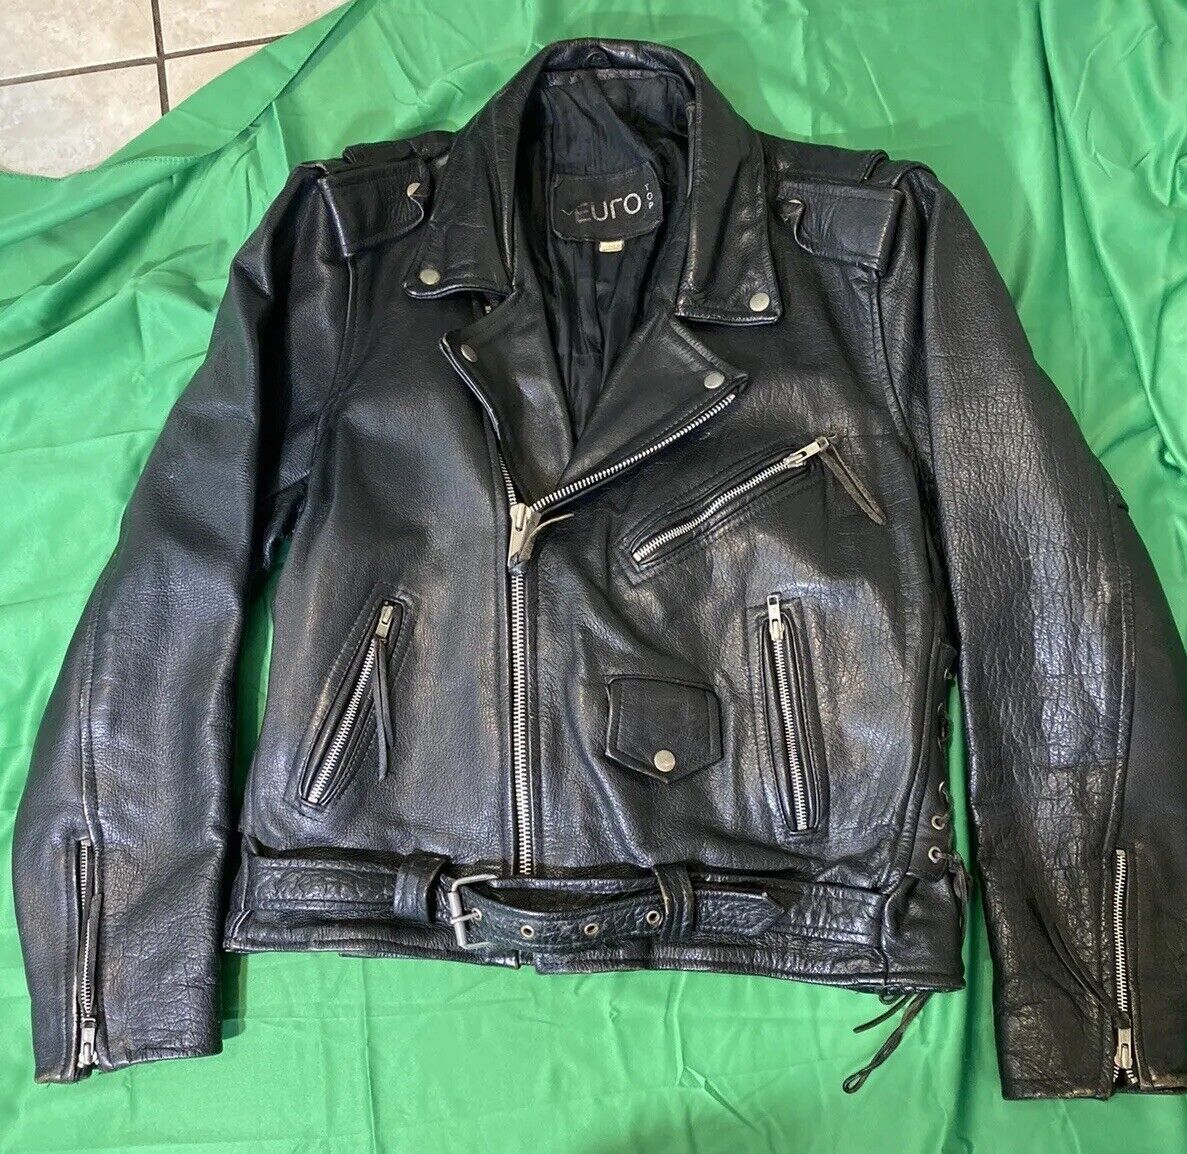 VTG Euro Motorcycle Leather Jacket Size 40 - image 1